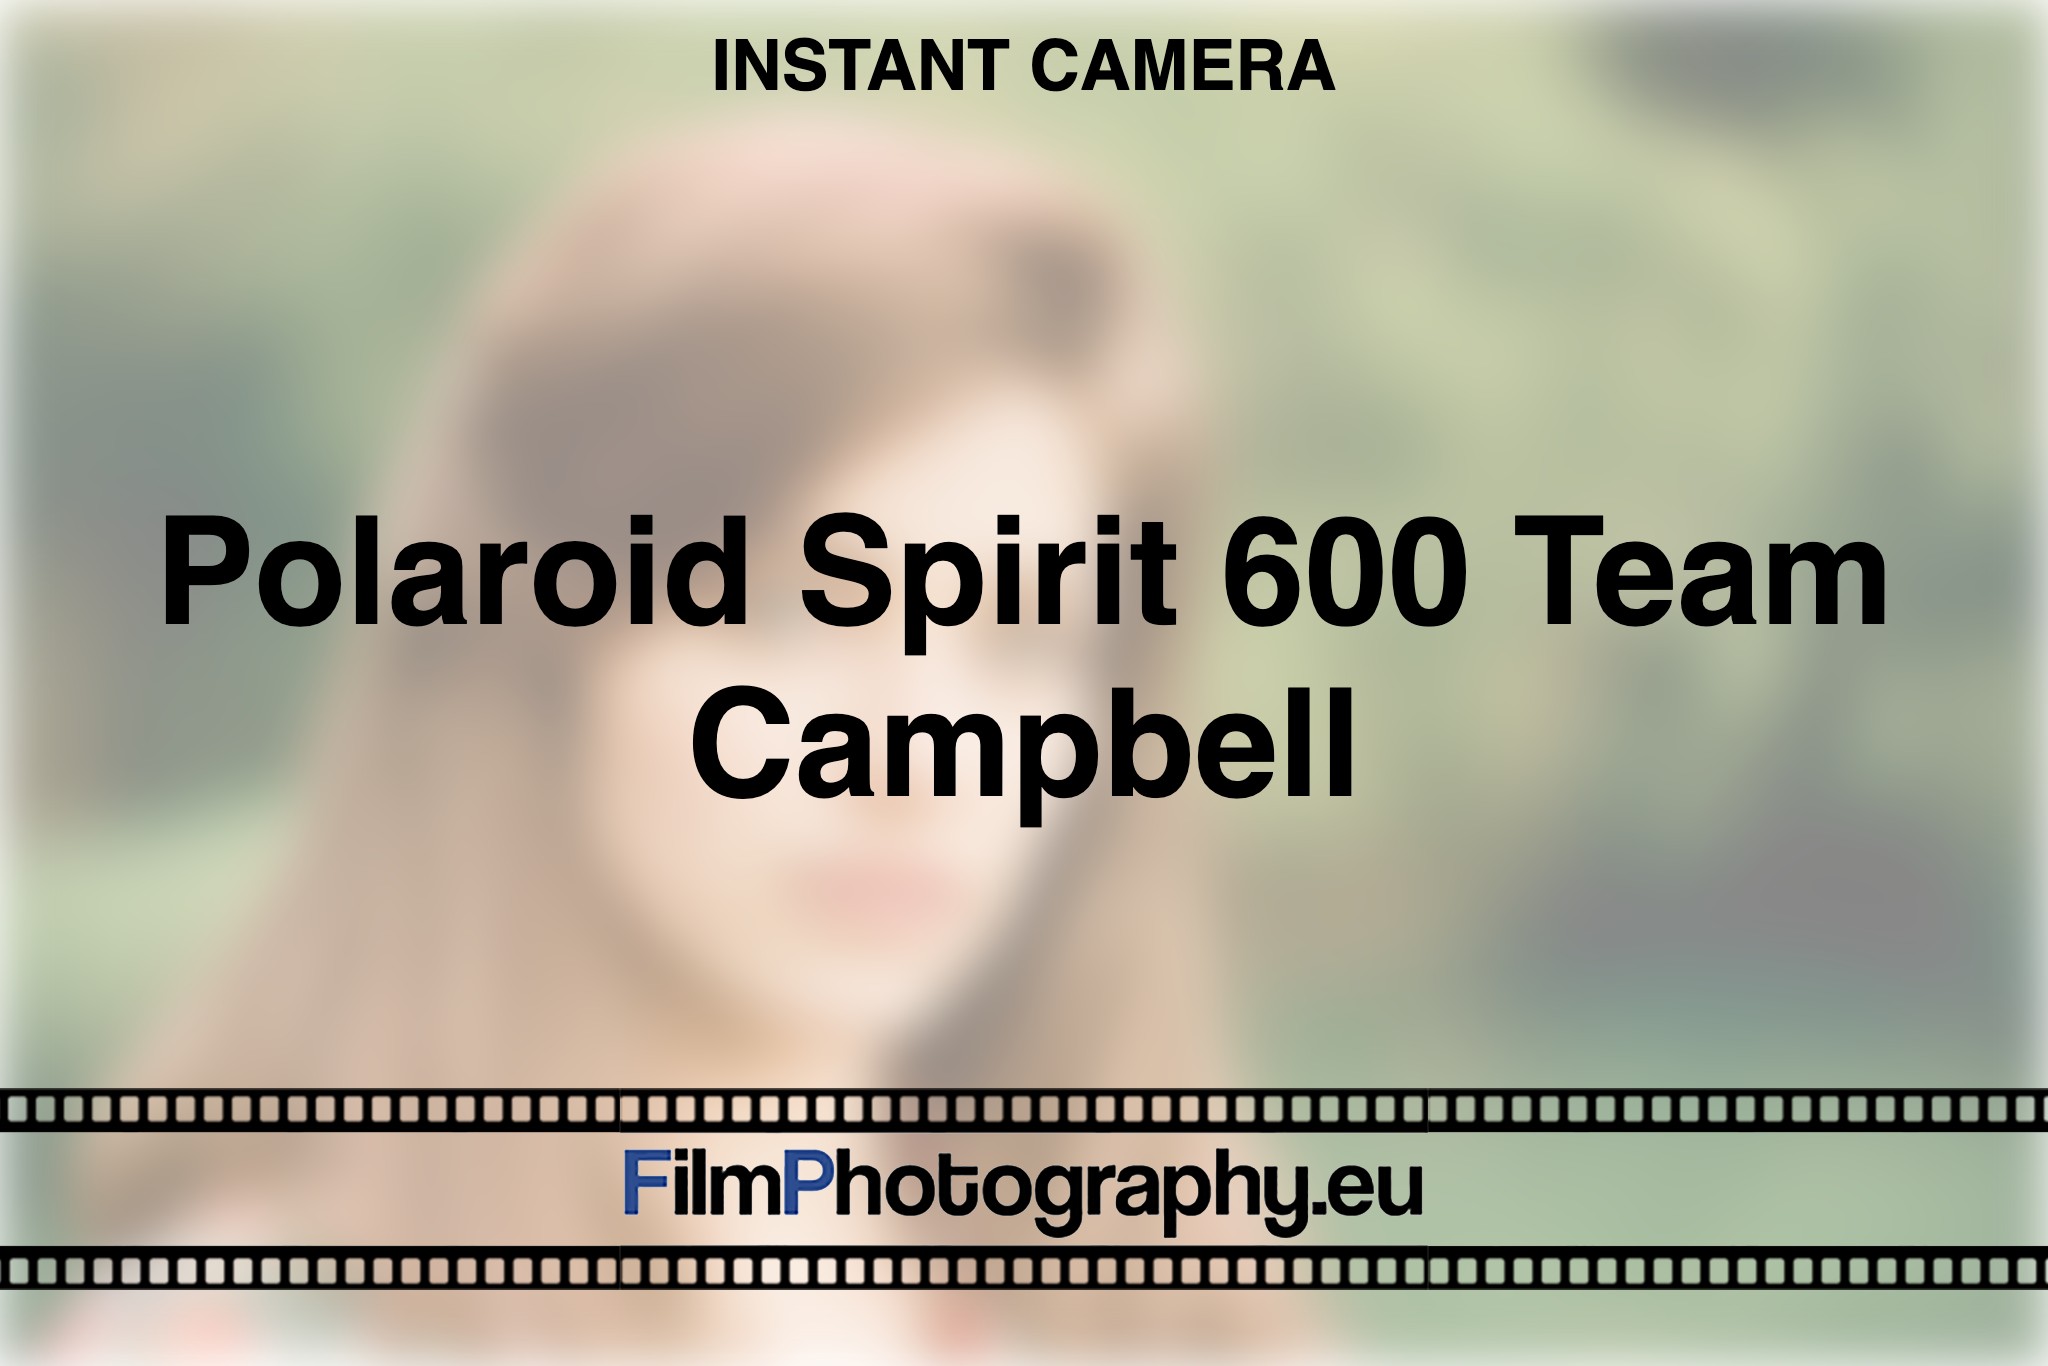 polaroid-spirit-600-team-campbell-instant-camera-bnv